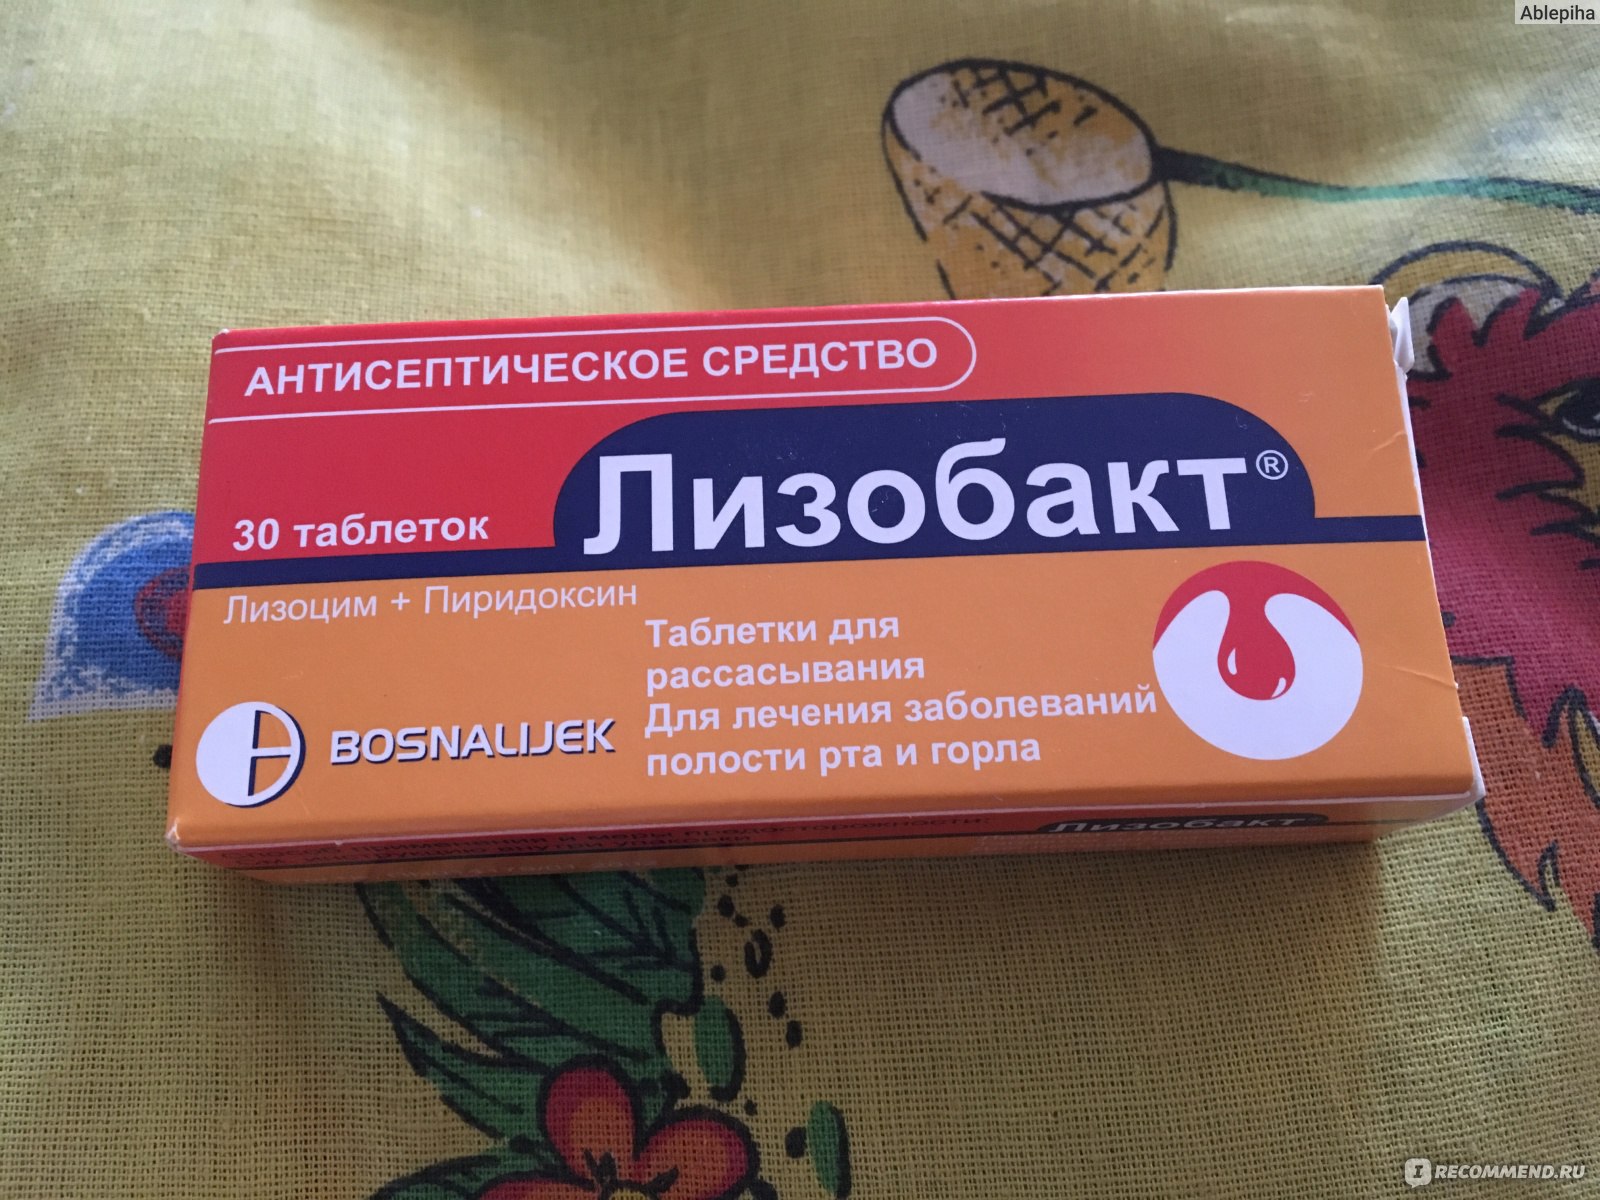 Ларипронт таблетки для рассасывания – инструкция по применению, отзывы, цена, аналоги. можно ли давать препарат детям? что лучше – ларипронт или лизобакт?